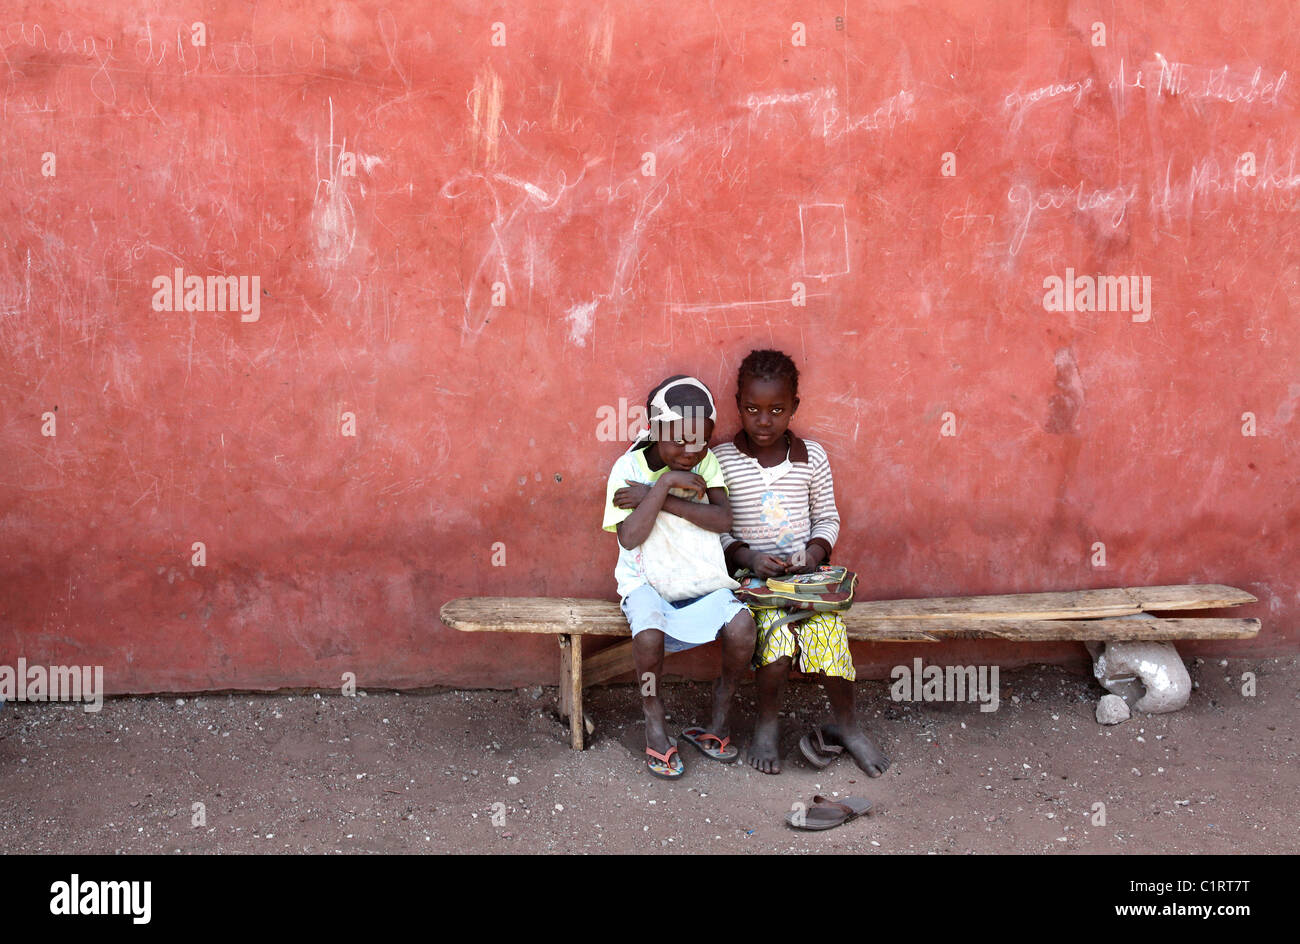 Senegal two immagini e fotografie stock ad alta risoluzione - Alamy